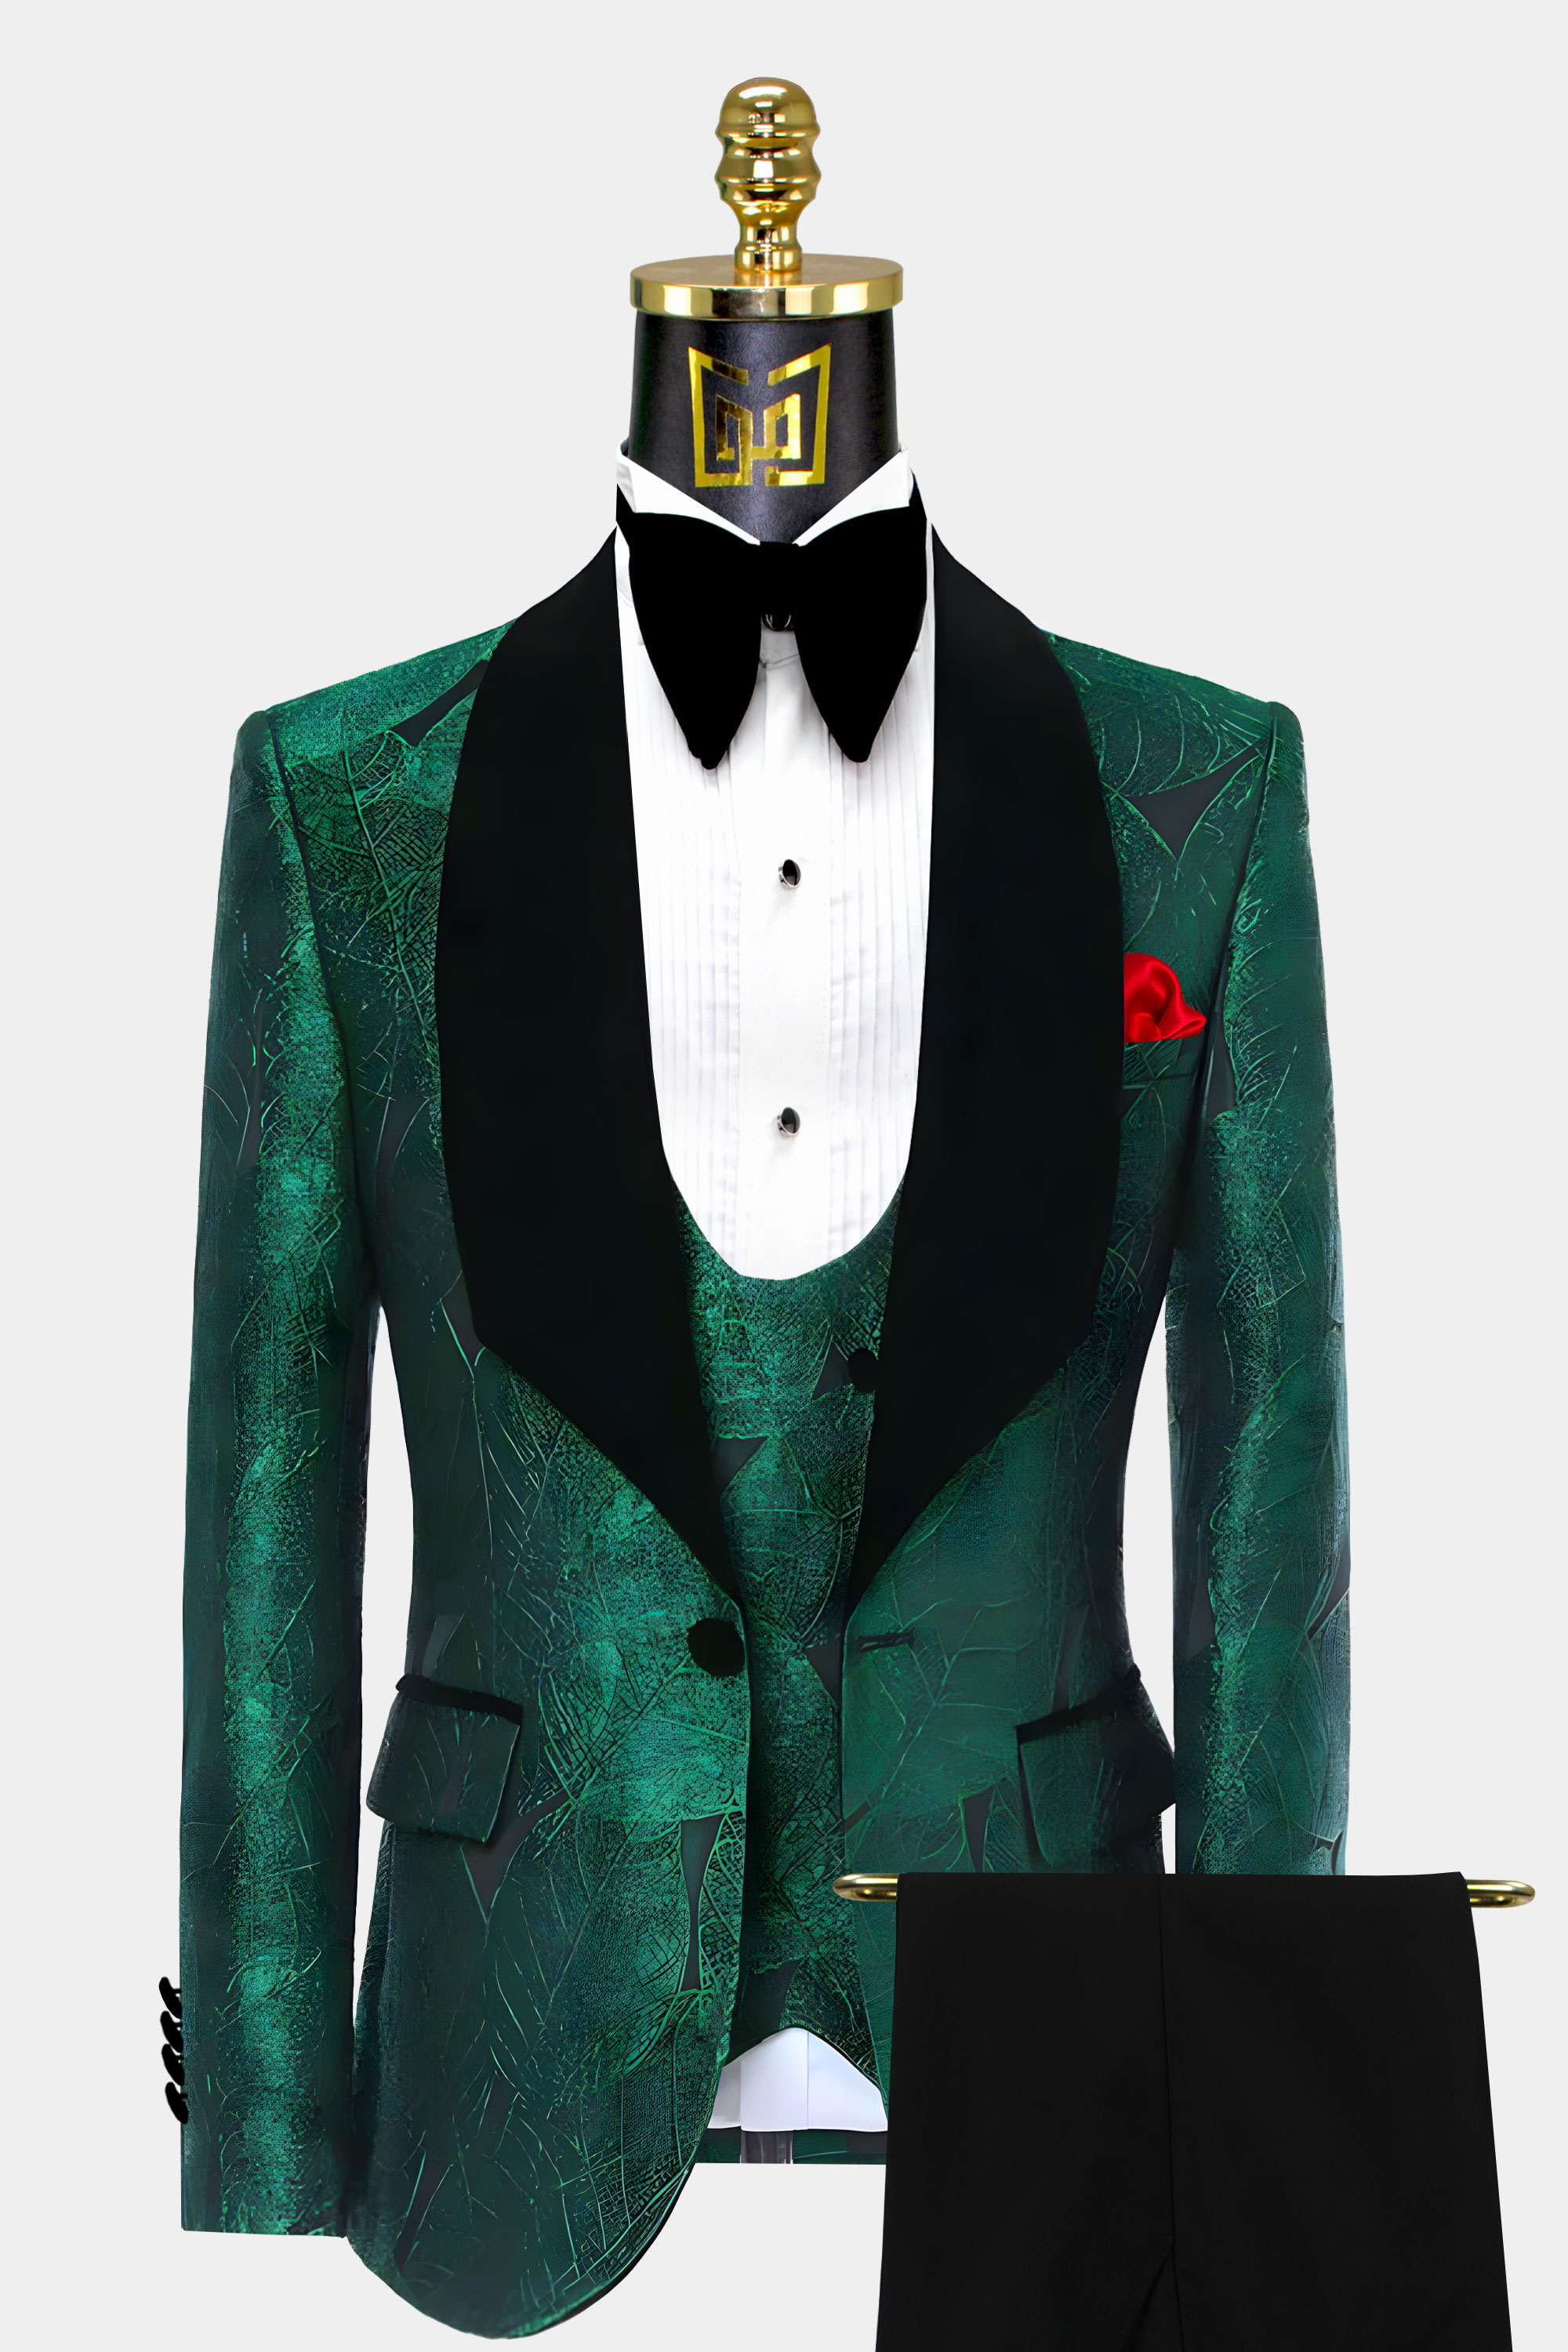 Mens Emerald Green Tuxedo Wedding Groom Prom Suit From Gentlemansguru.Com  